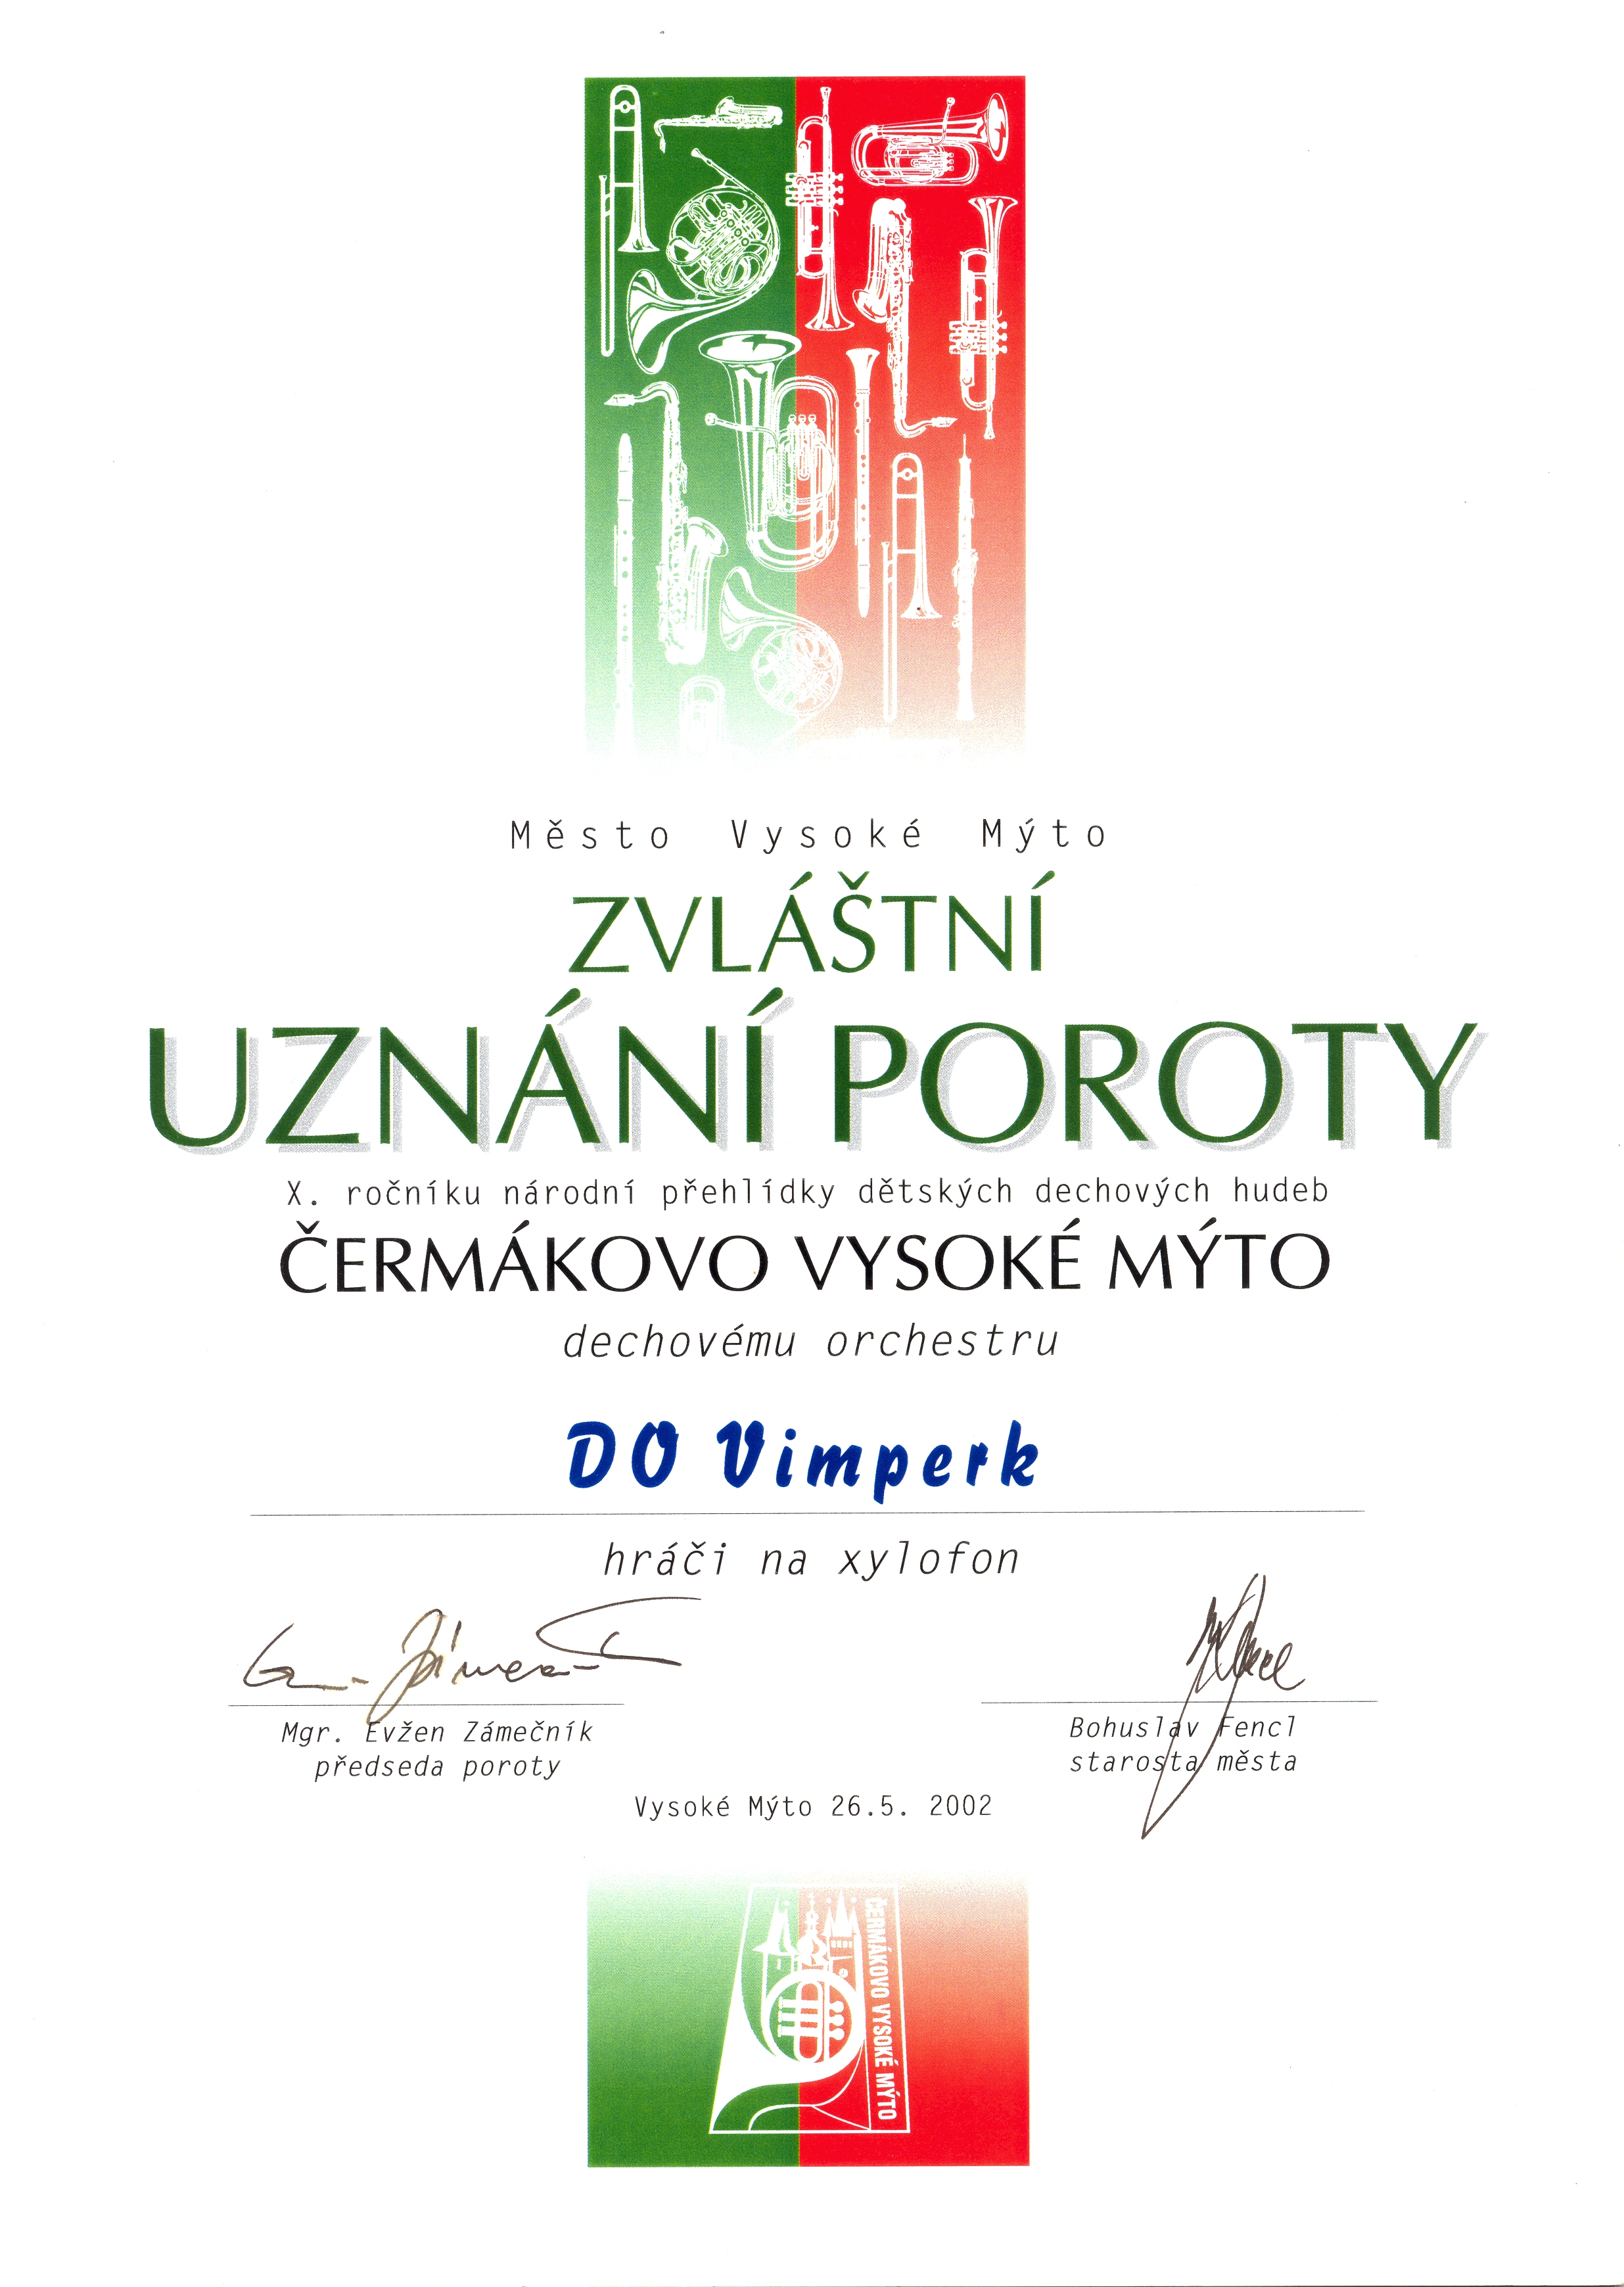 Vysoké-Mýto-2002-zvl.uzn_.poroty1